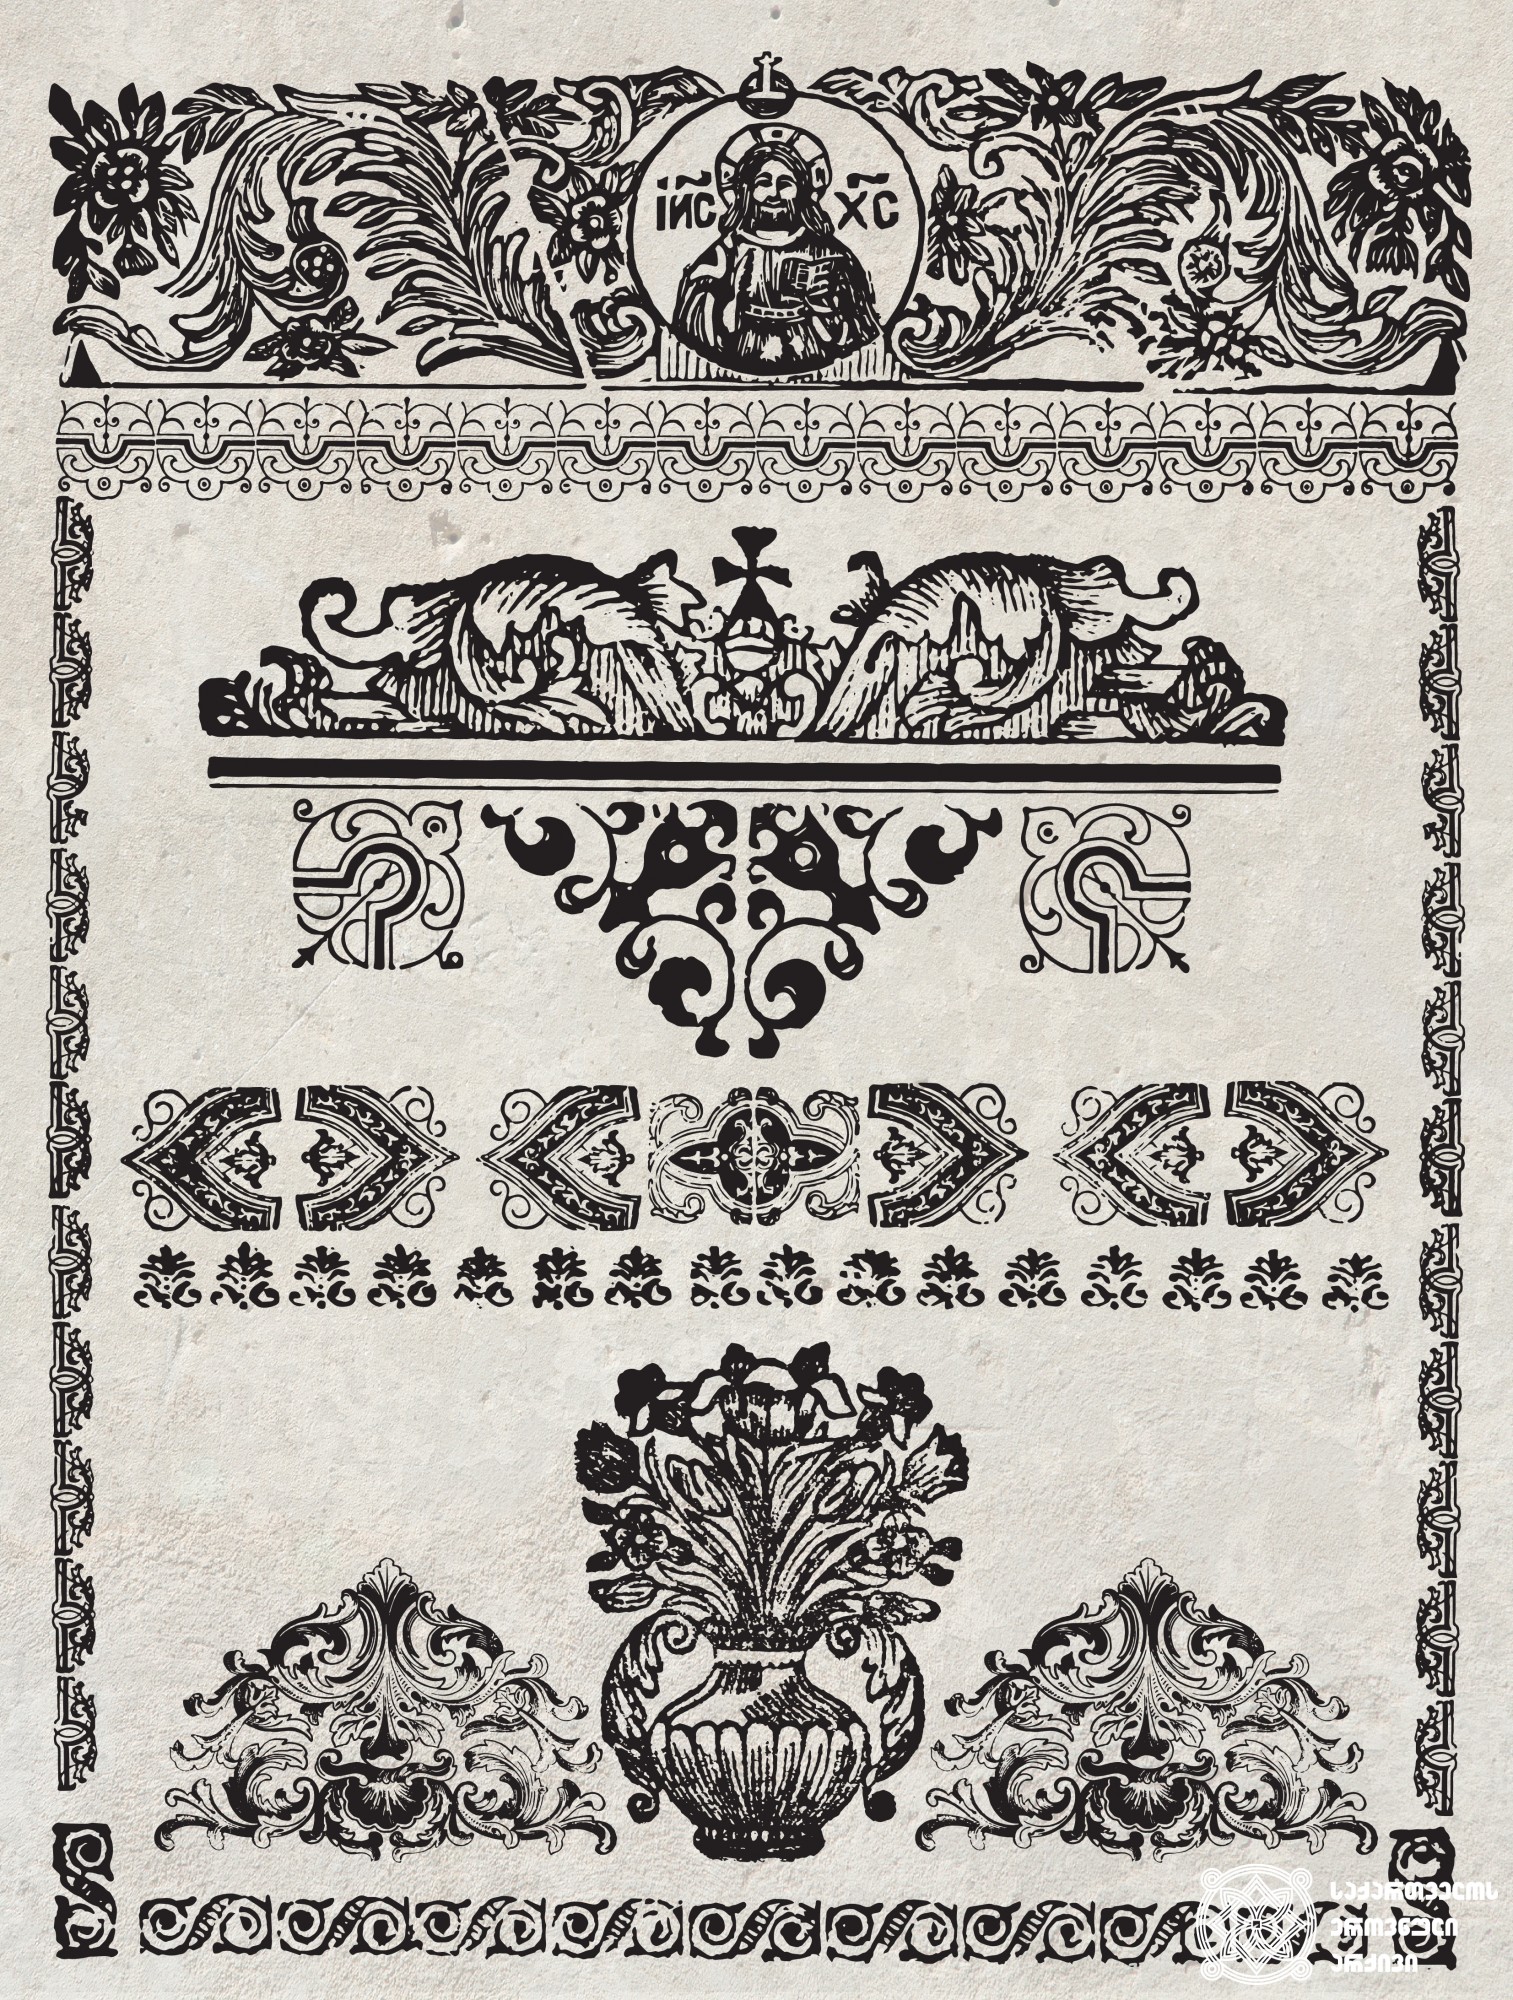 ერეკლე II-ის სტამბაში გამოცემულ წიგნებში გამოყენებული შემკულობები <br>
ტფილისი, 1749-1795<br>
Decorations used in the Books published in Erekle’s Printing House <br>
Tfilisi, 1749-1795